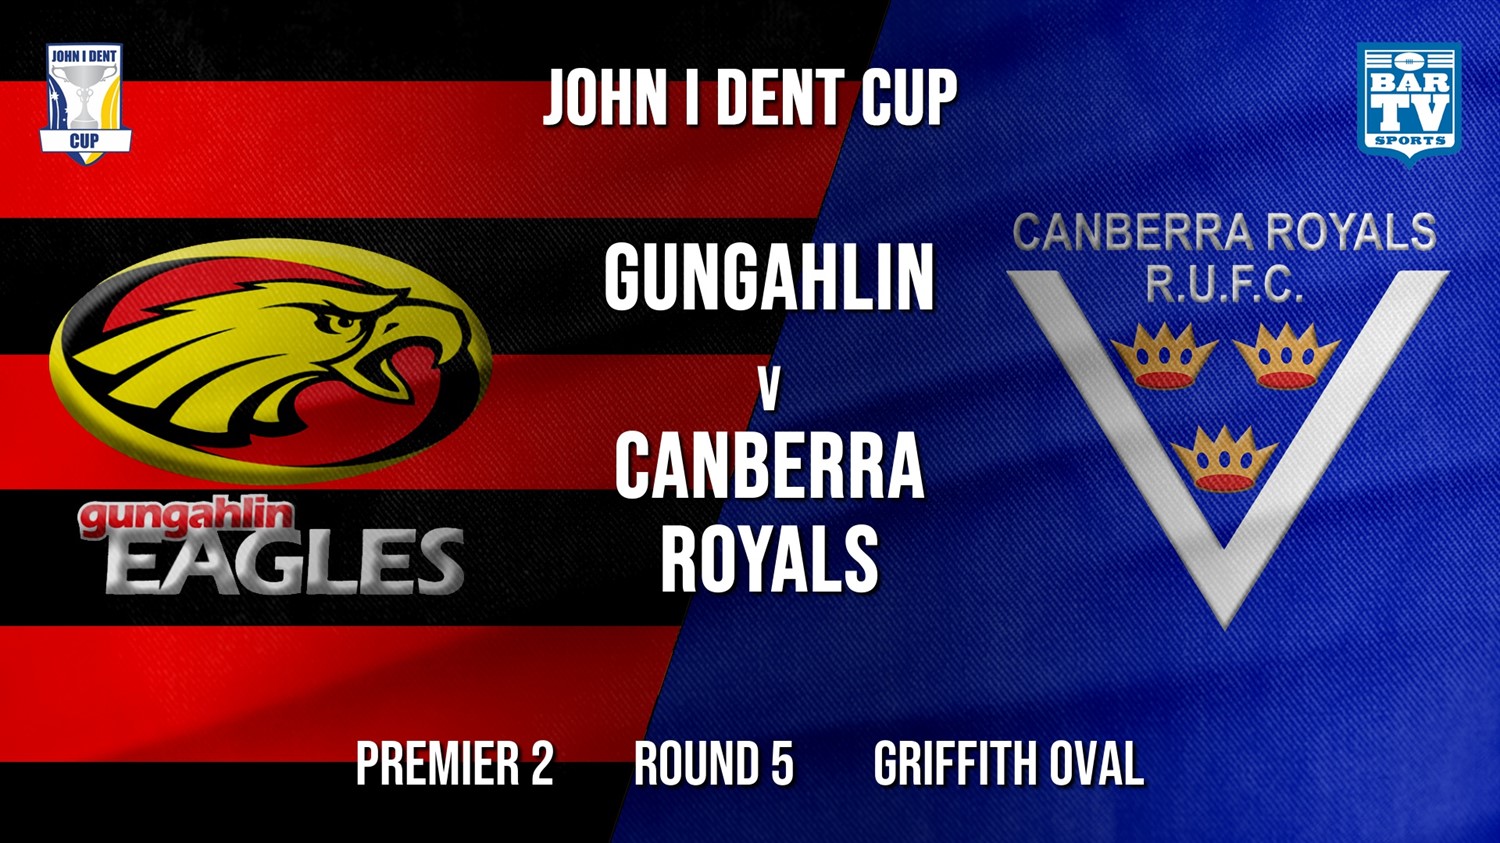 John I Dent Round 5 - Premier 2 - Gungahlin Eagles v Canberra Royals (1) Minigame Slate Image